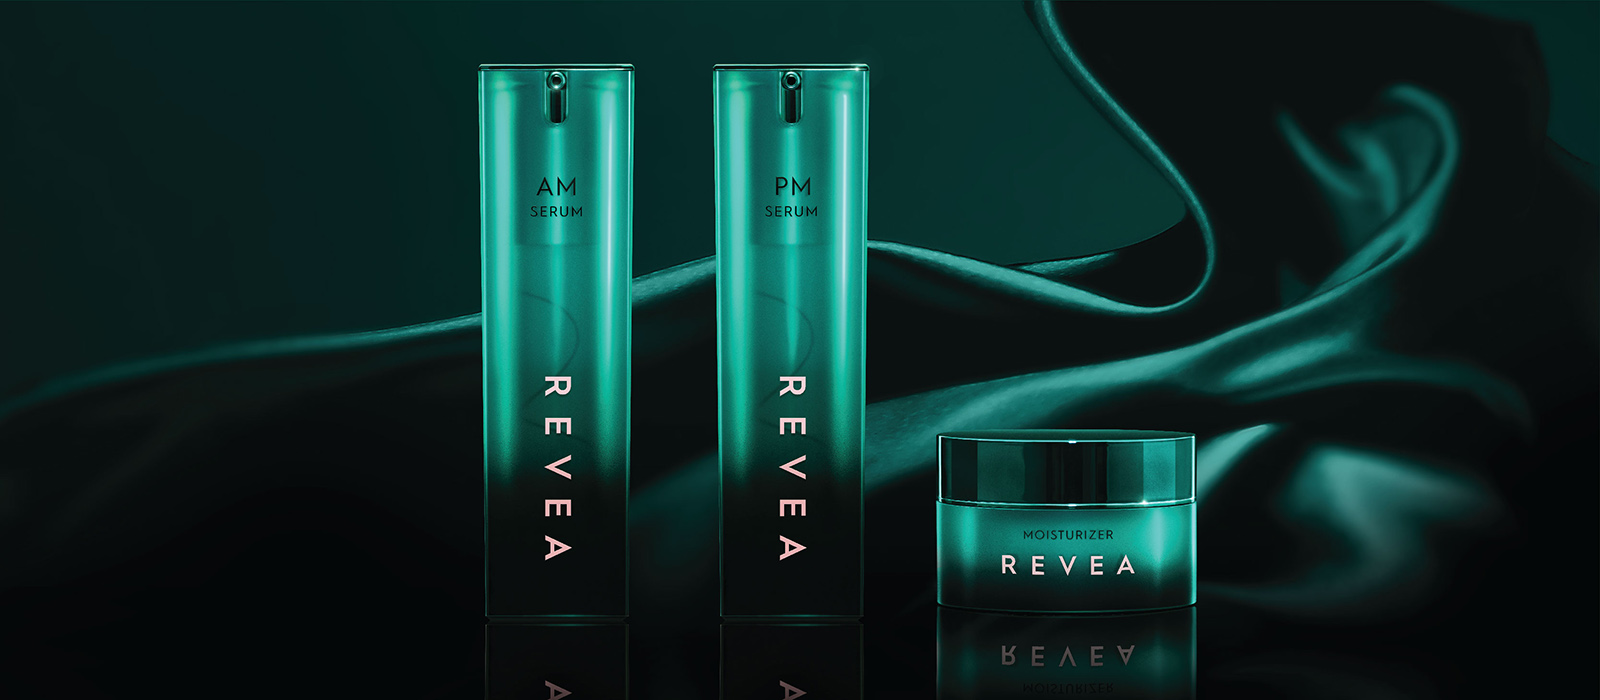 Revea Skincare moisturizer and serum